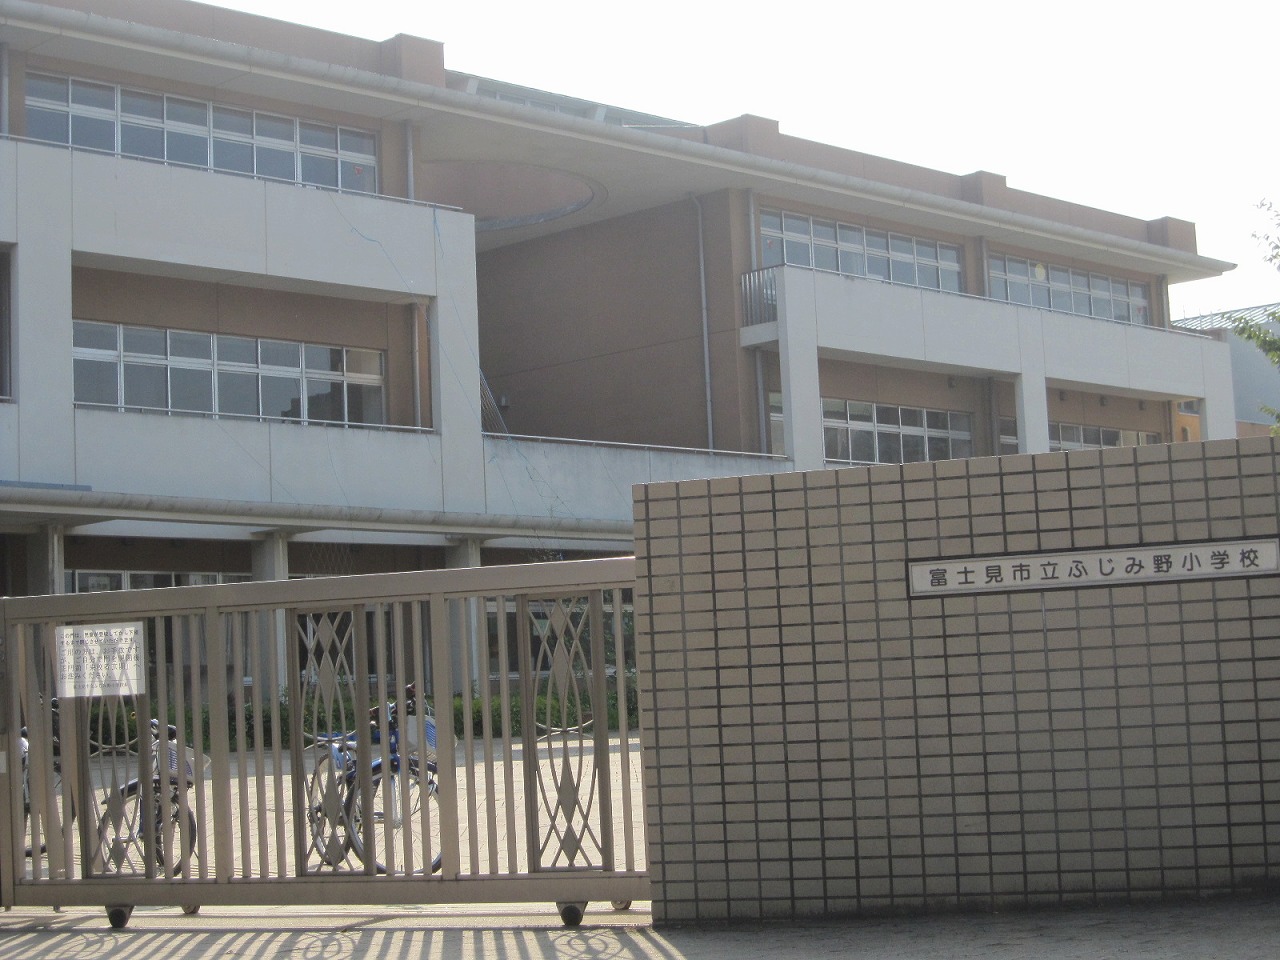 Primary school. 1200m to Fujimi Municipal Fujimino elementary school (elementary school)